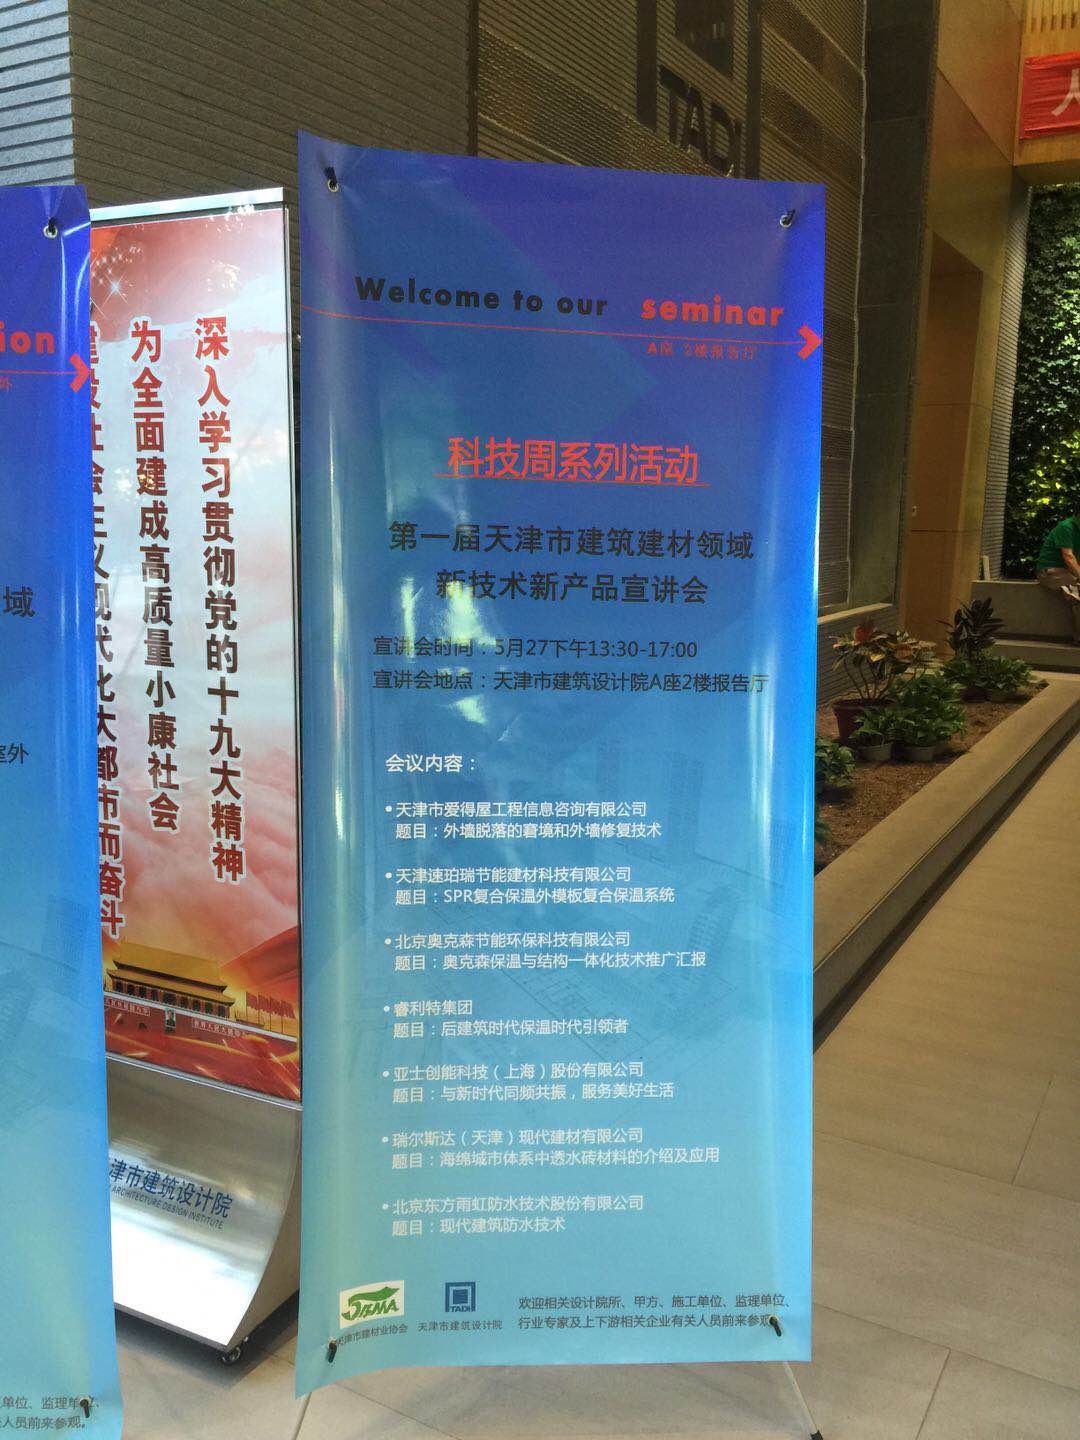 千爱公司应邀参加“2019第一届天津市建筑材料领域新技术新产品科技周宣讲及展览会”